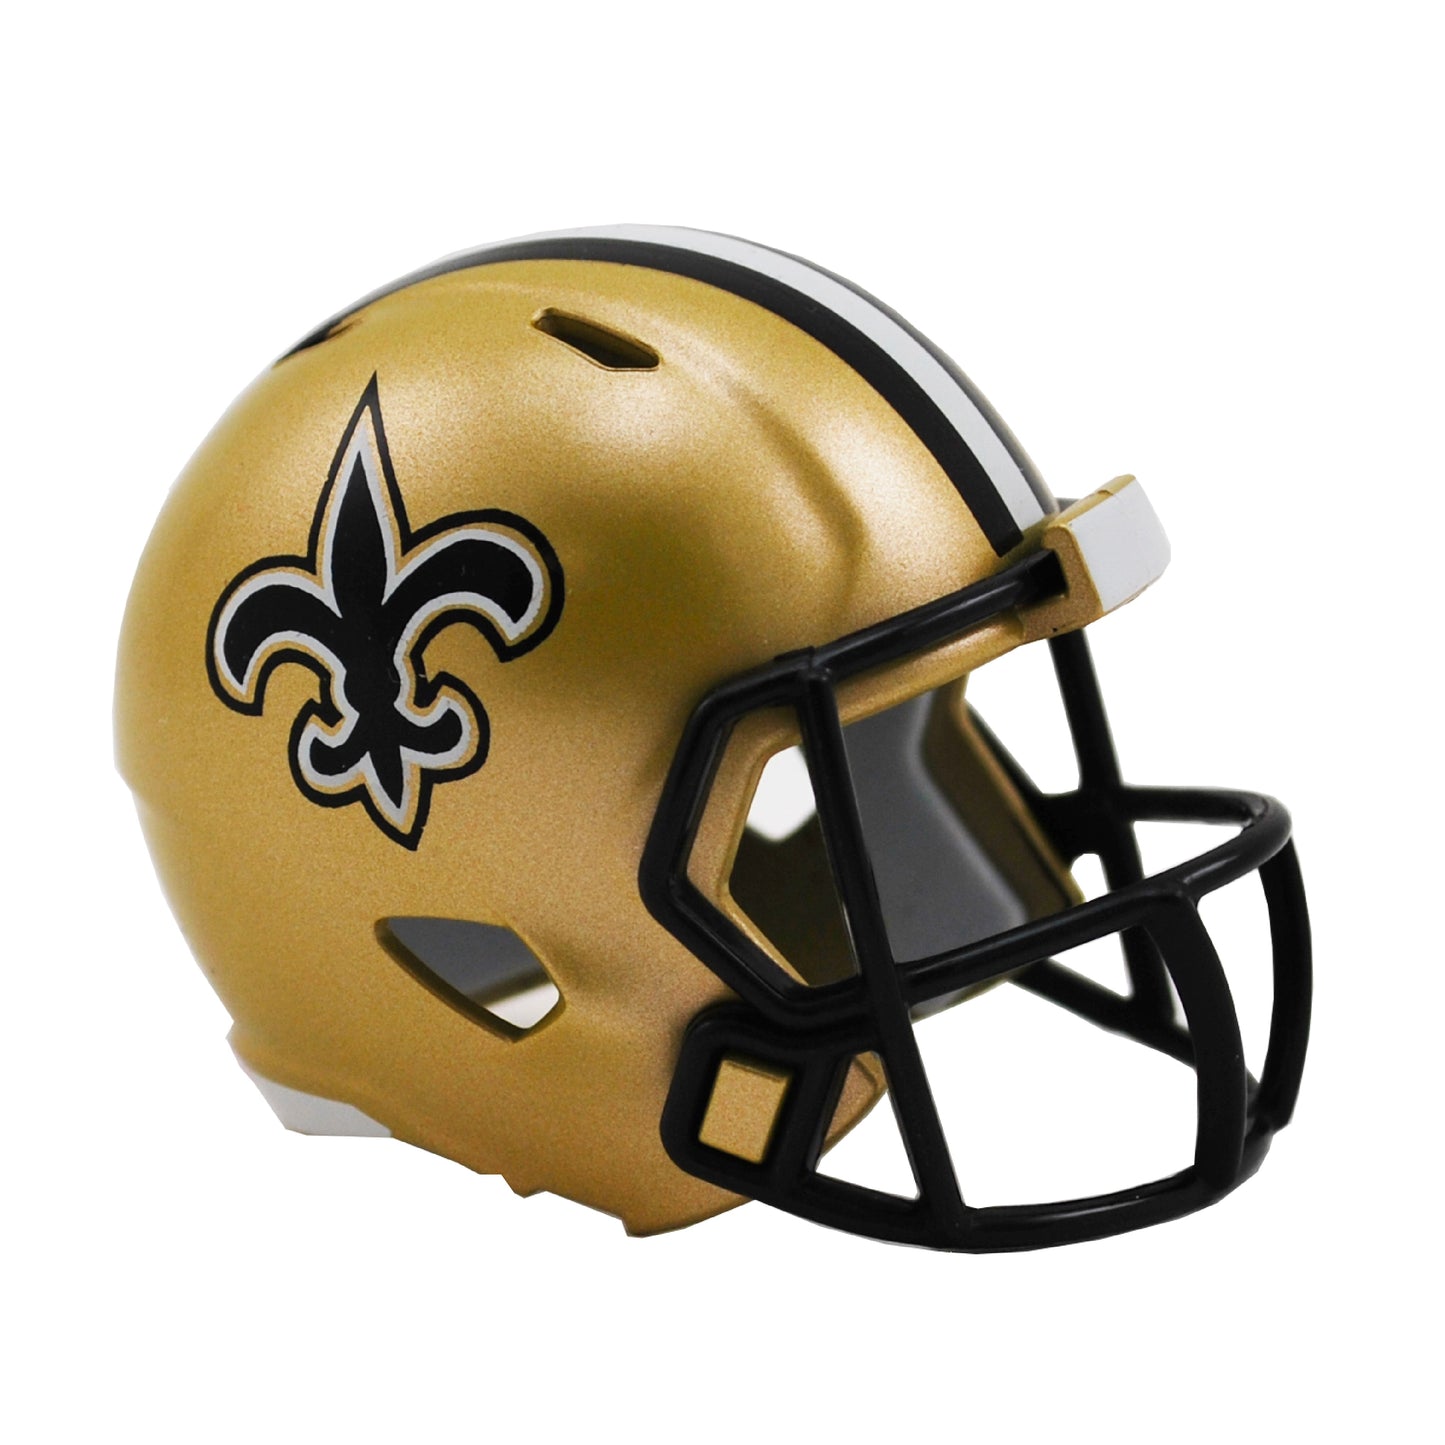 New Orleans Saints Riddell Speed Pocket Pro Football Helmet